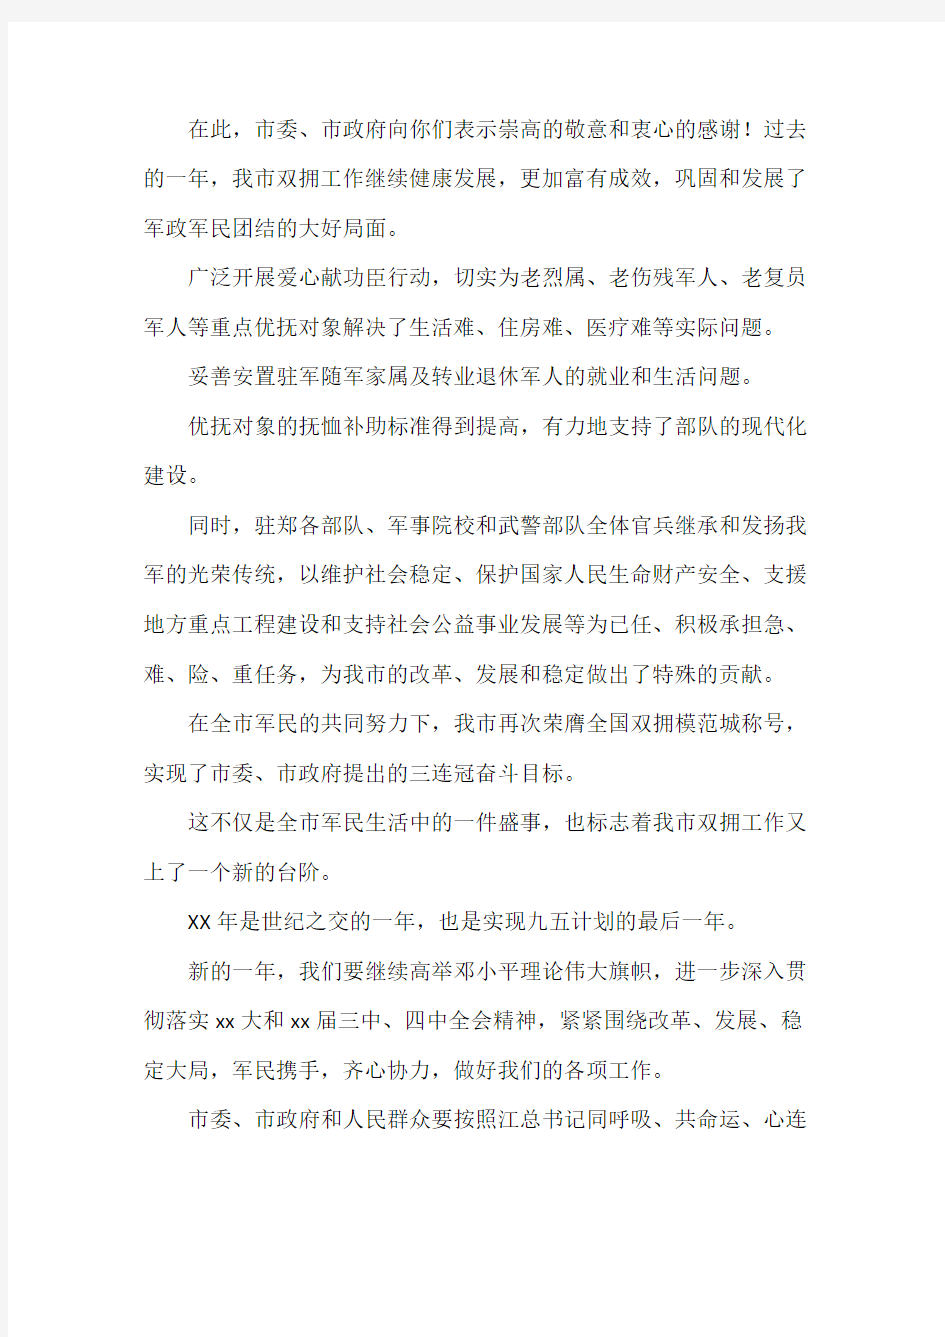 郑州市人民政府对军人的慰问